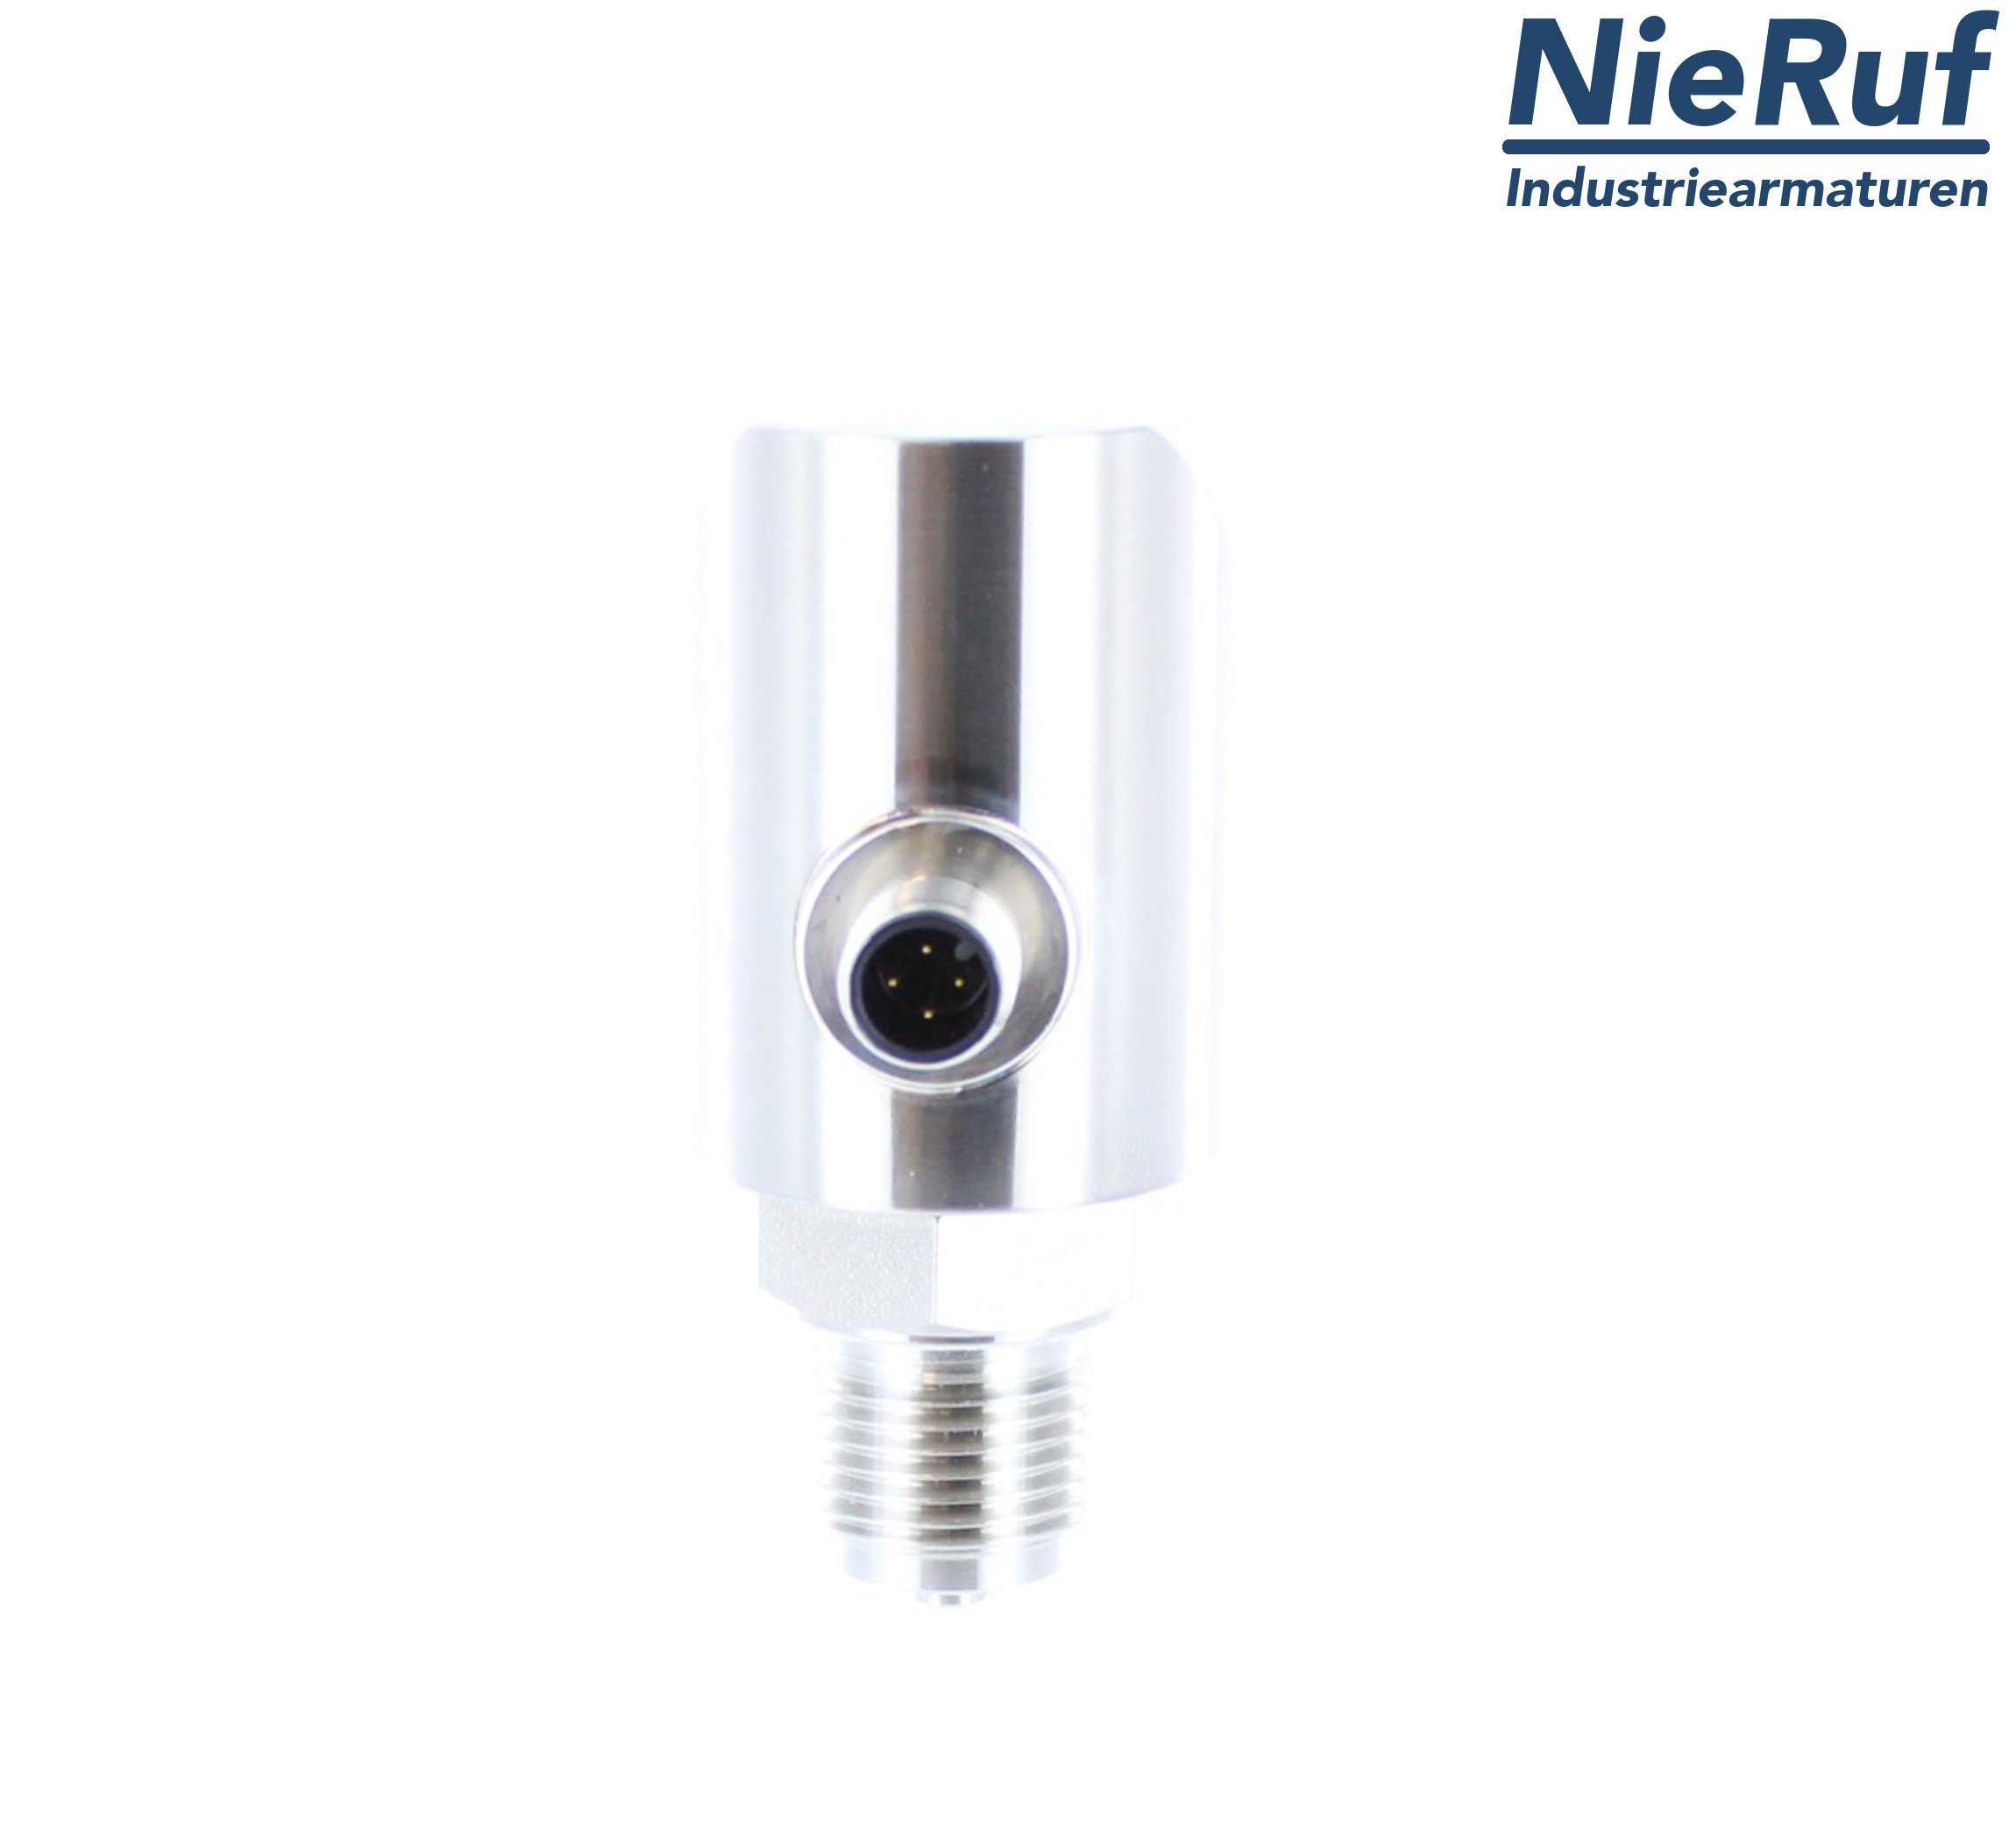 digital pressure sensor G 1/4" B 4-wire: 1xPNP, 1x4 - 20mA, Desina FPM 0,0 - 2,5 bar